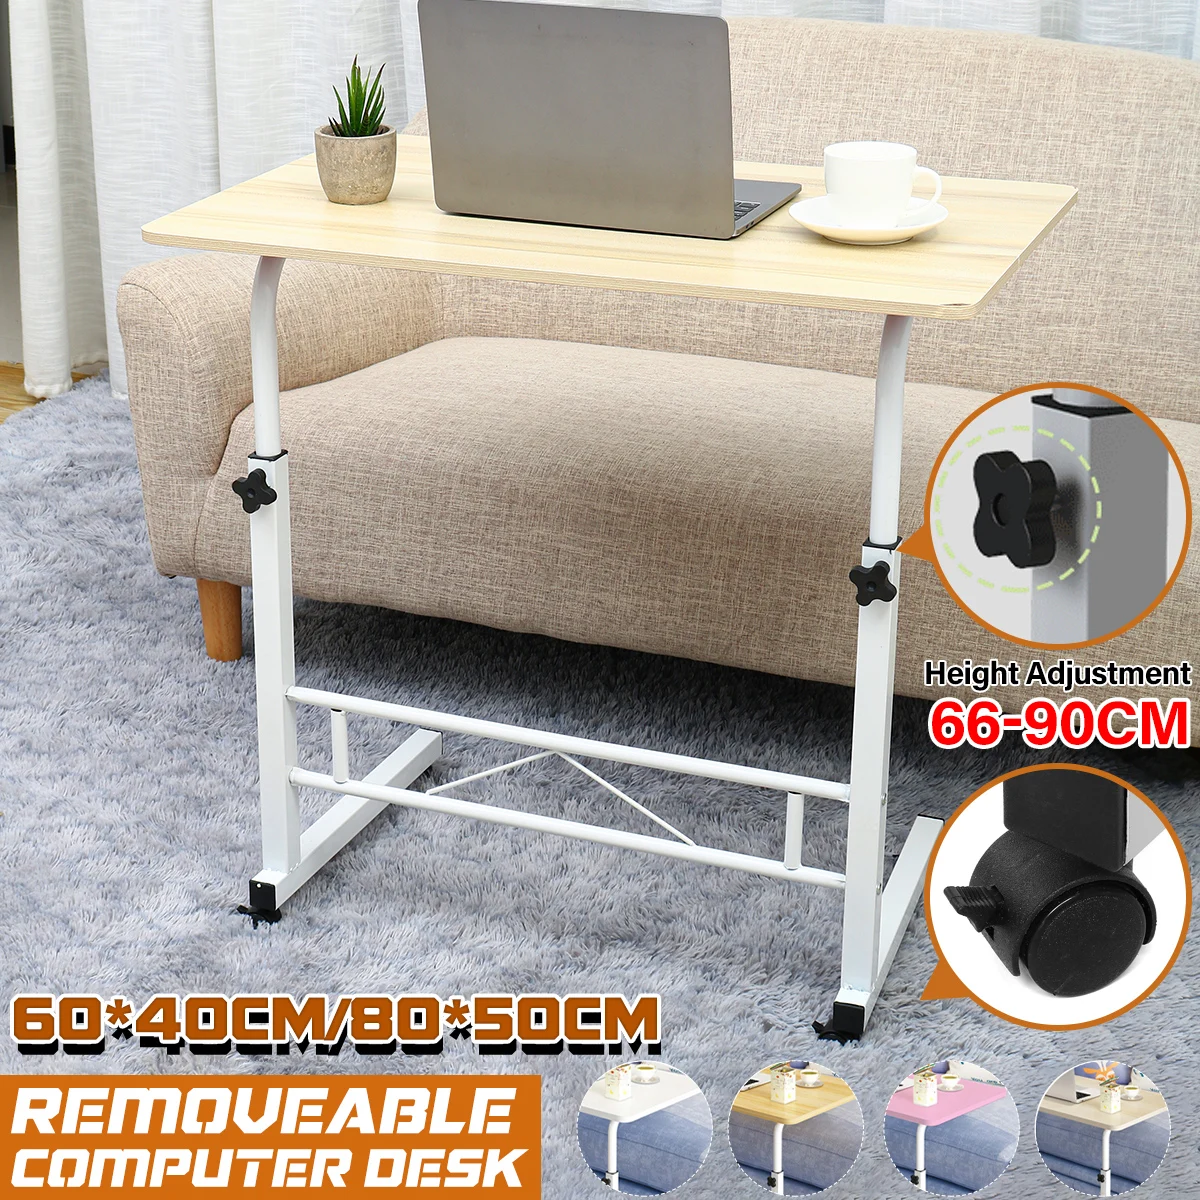 

80x50 см компьютерный стол регулируемый Портативный ноутбук стол поворот ноутбук кровать стол может быть поднята столик на ножках